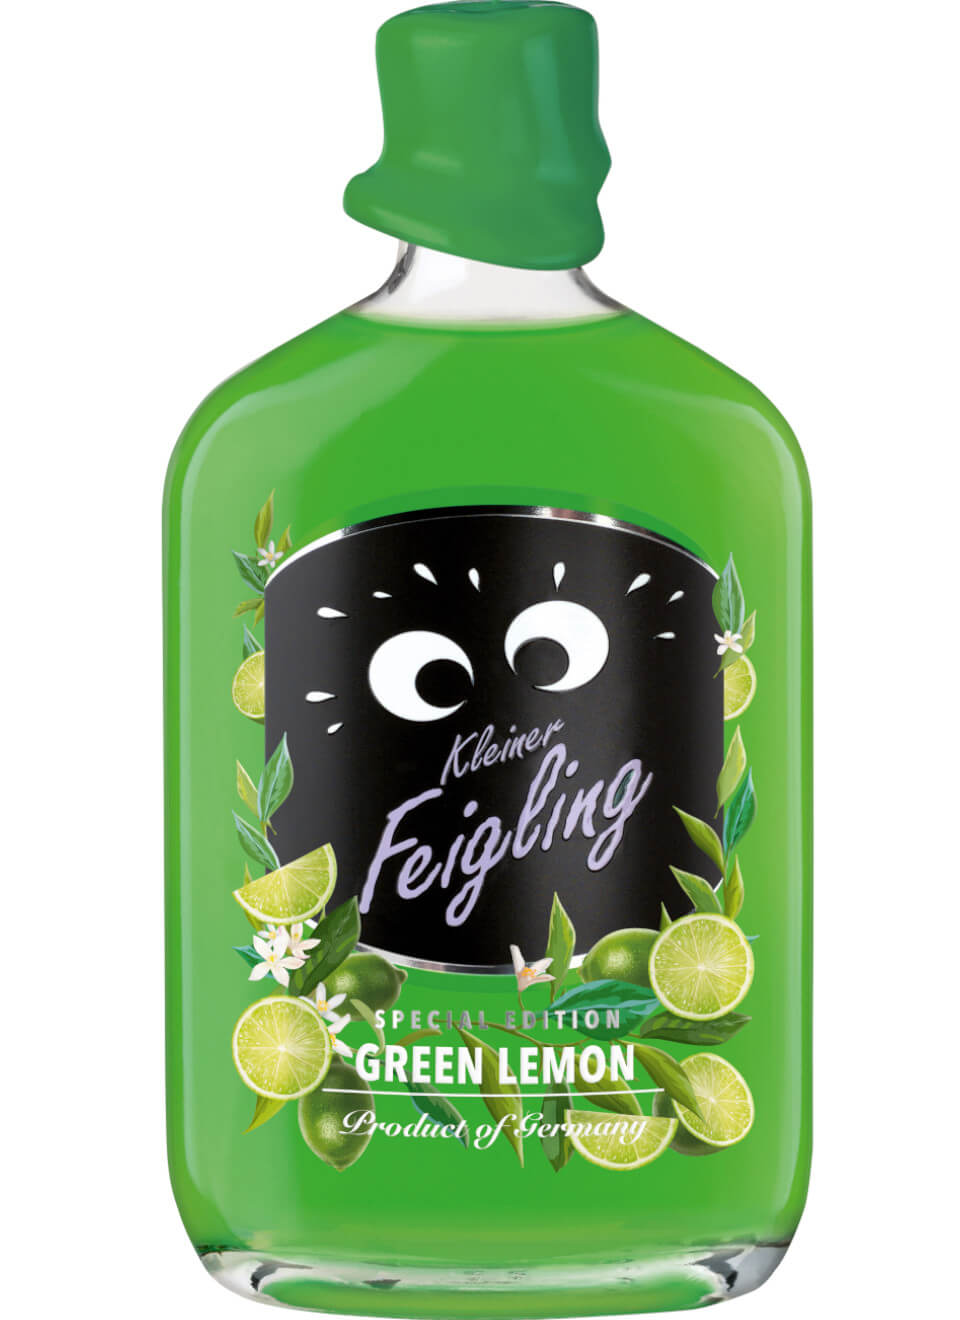 Kleiner Feigling Green Lemon 0,5 L günstig kaufen | Spirituosenworld.de -  Online Shop für Spirituosen und Barzubehör